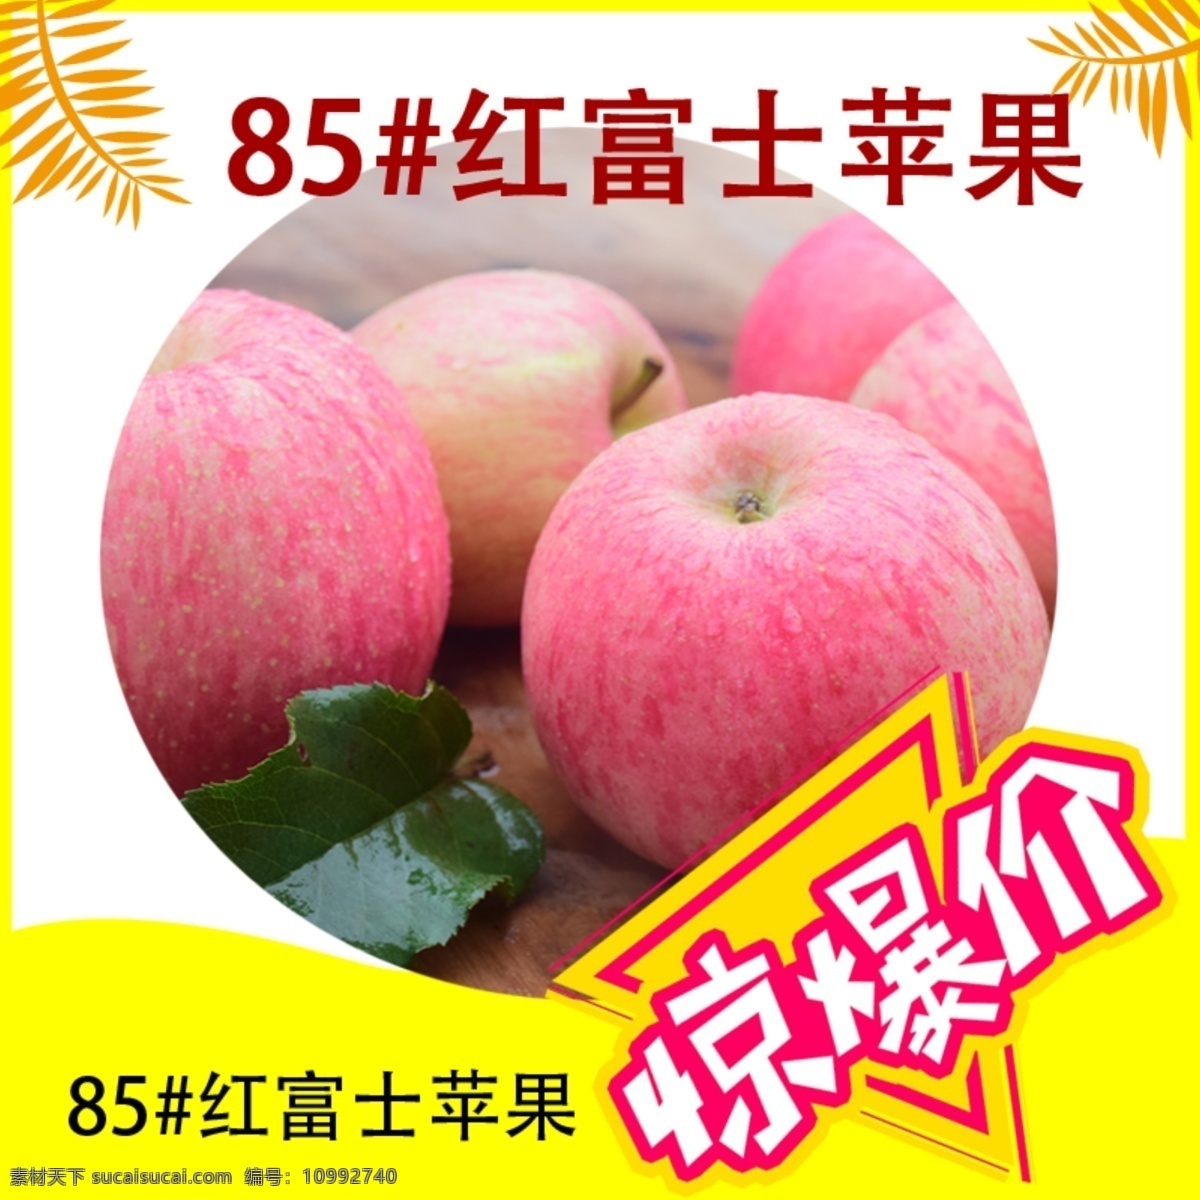 生鲜红富士 公众号 特价 生鲜 惊爆价 红富士 苹果 烟台 水果 广告 设计图库 分层